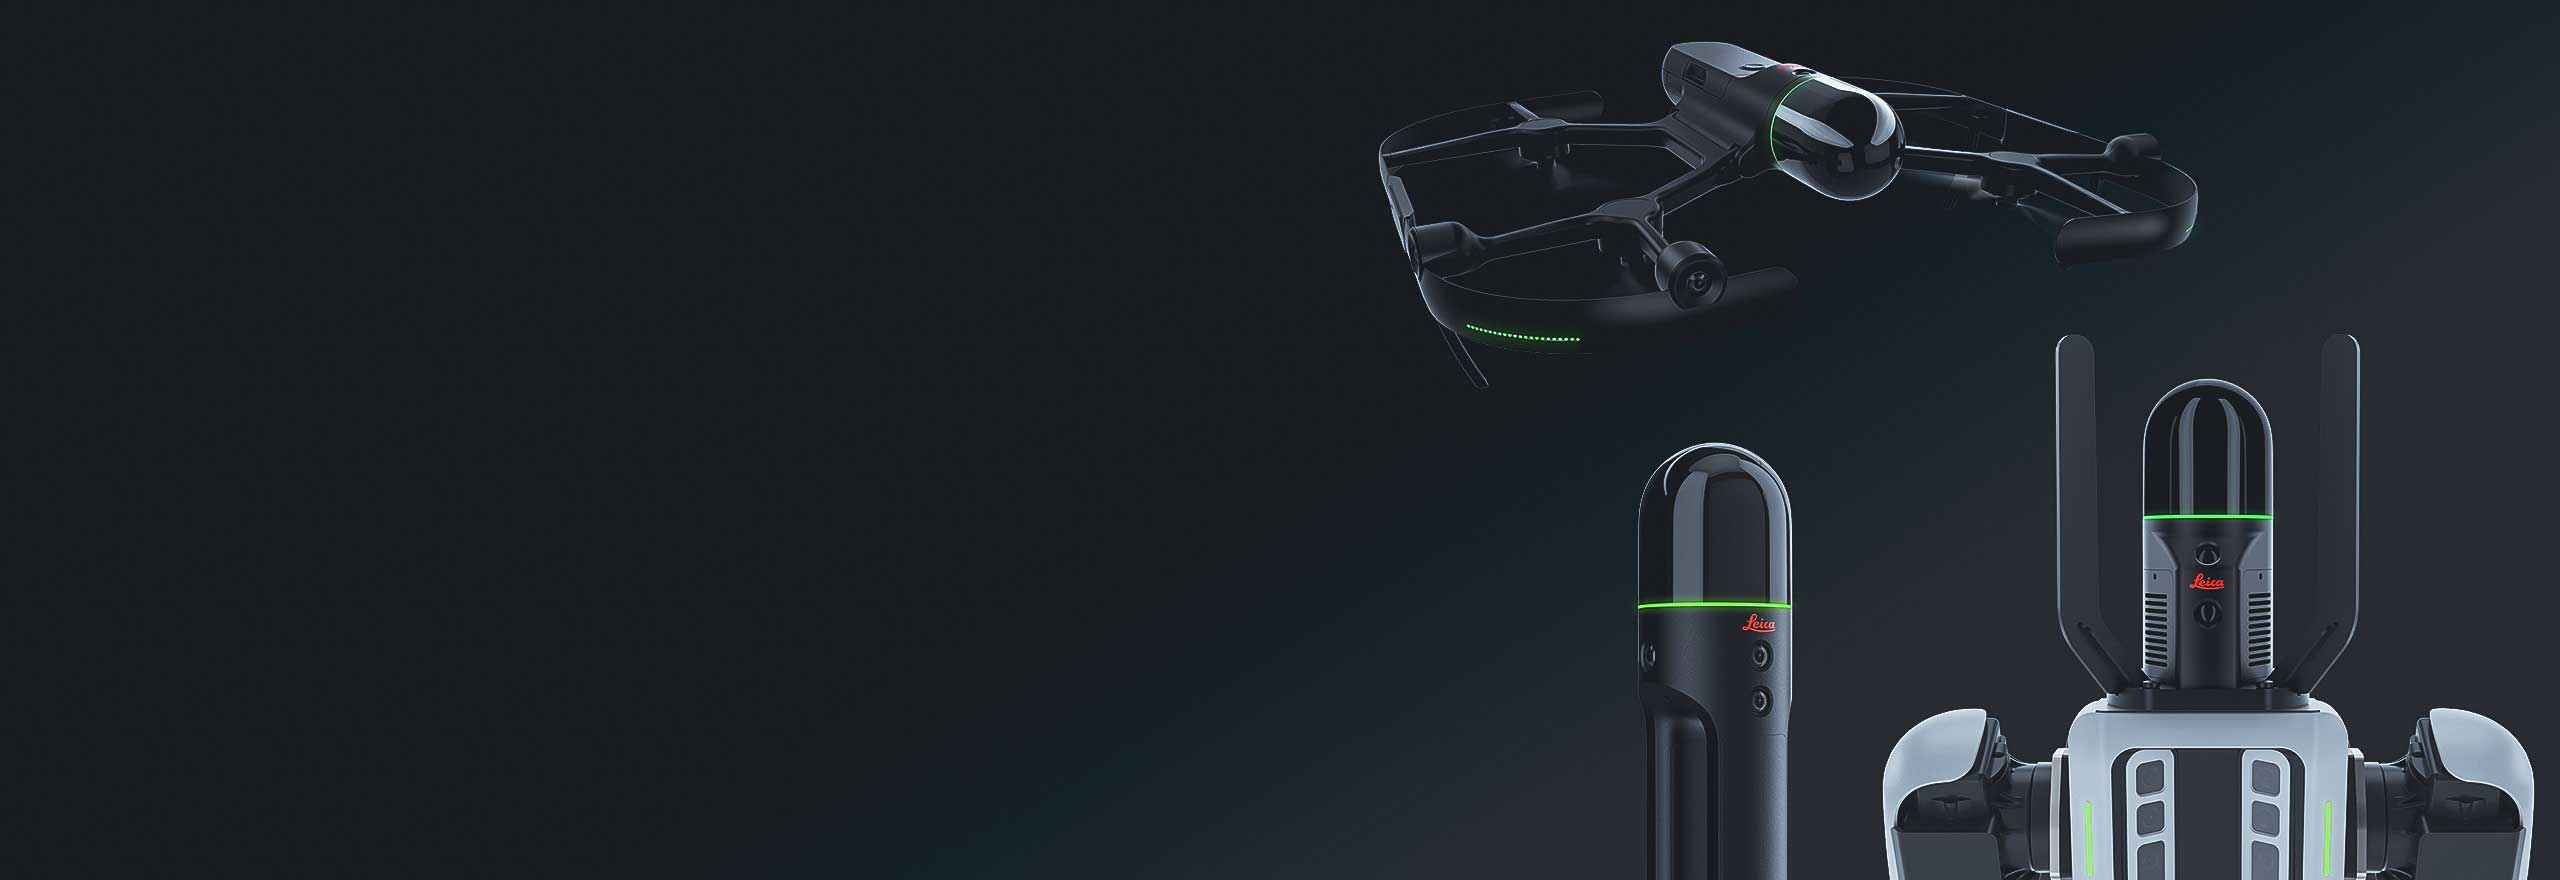 Soluções de captura autônoma da realidade Leica BLK, desde scanners a laser que voam até transportadores robóticos